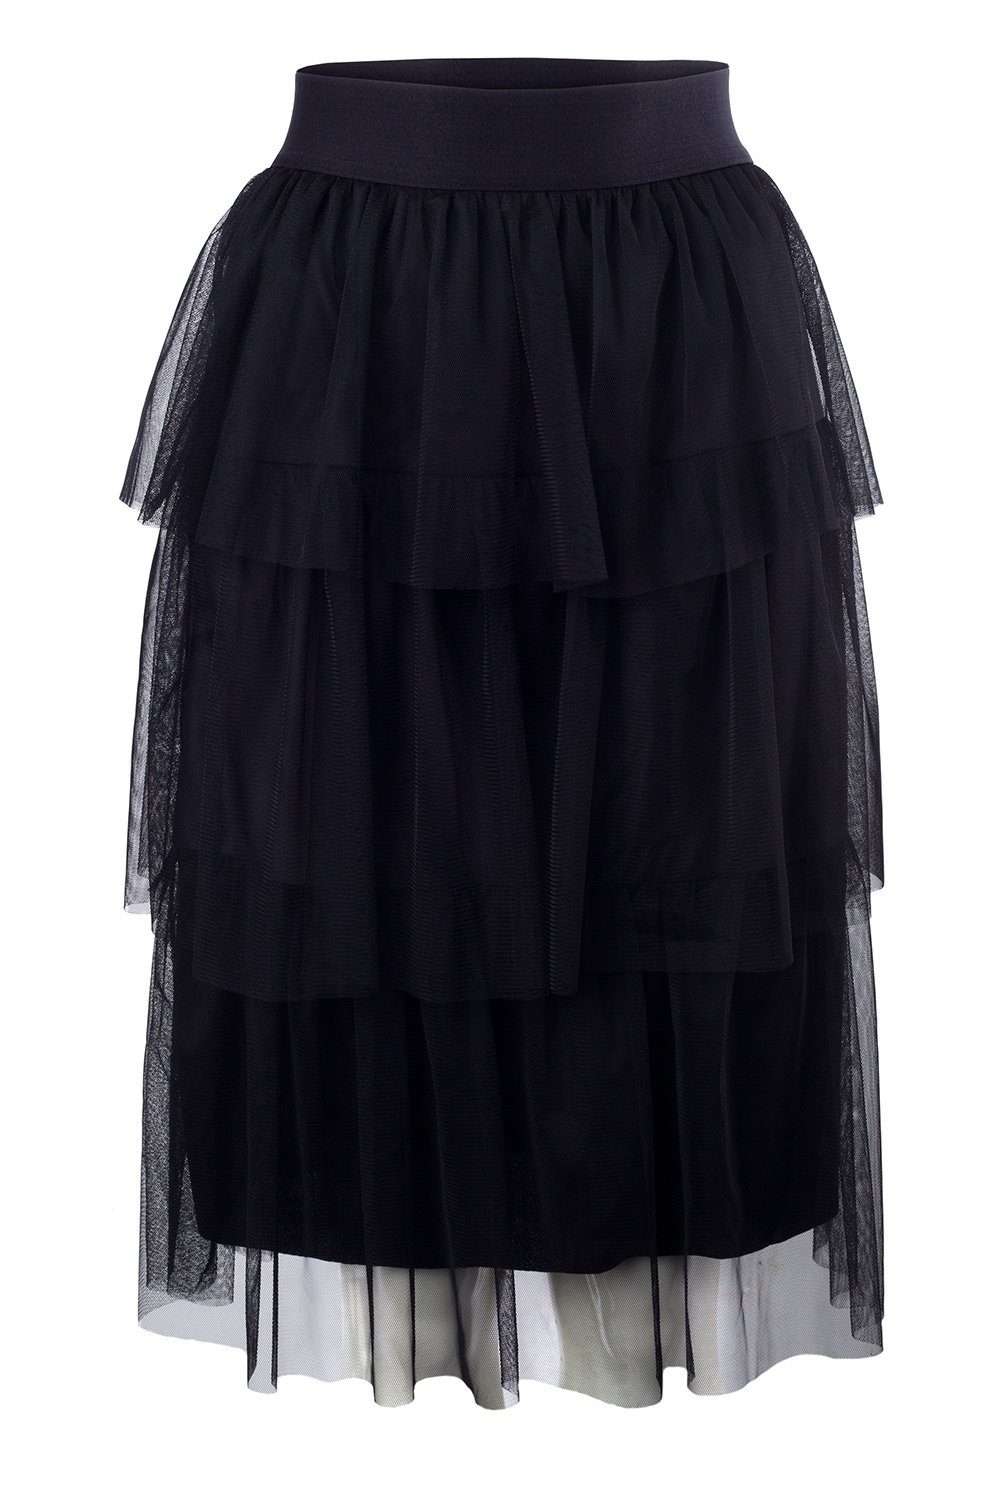 Юбка из тюля Трехслойная вечерняя юбка с эластичным поясом